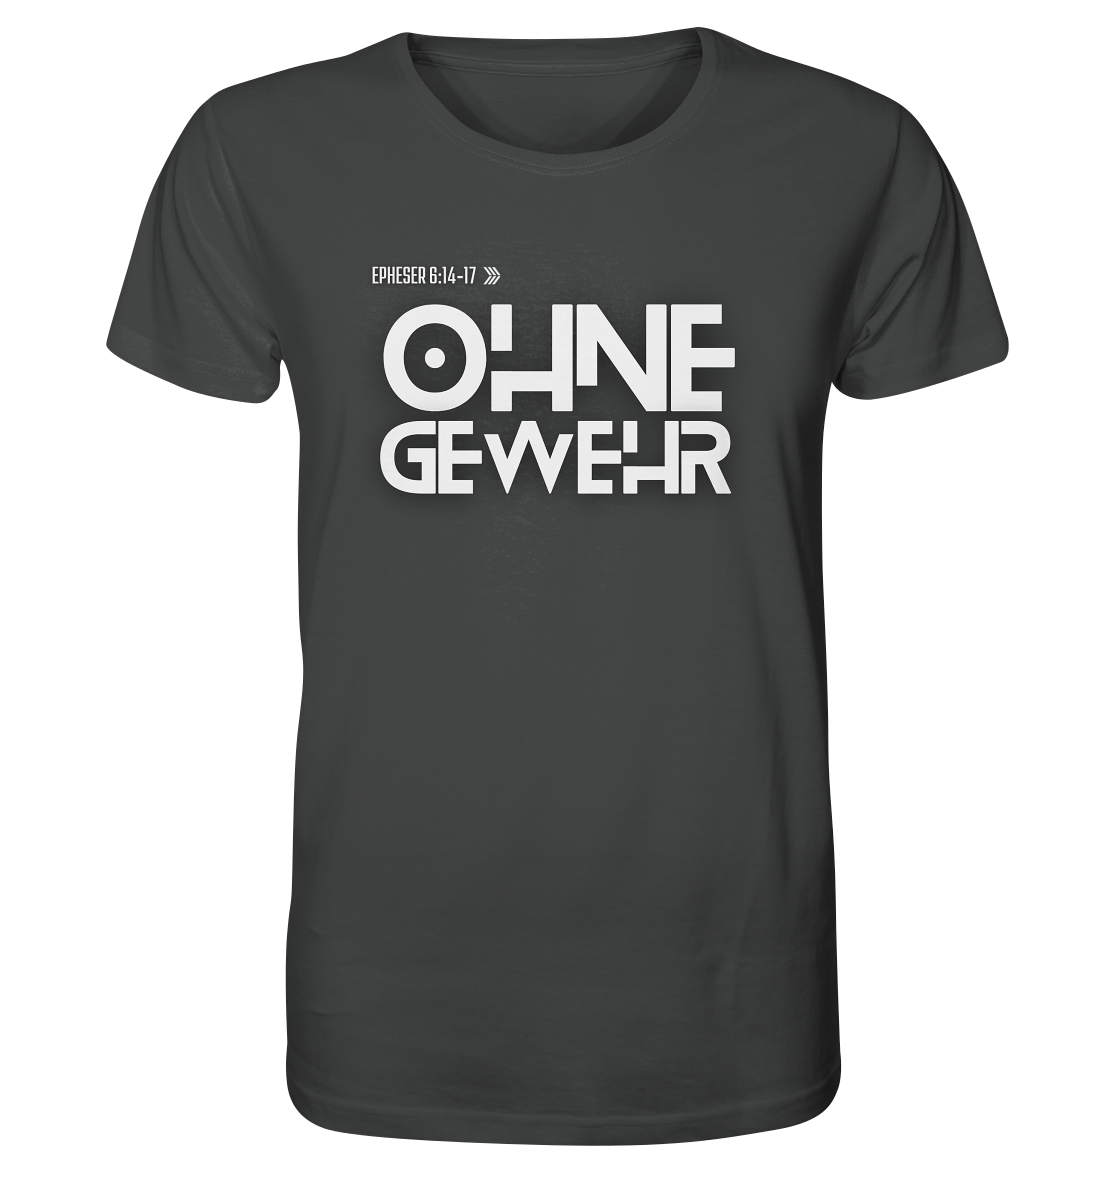 OHNE GEWEHR - Organic Shirt